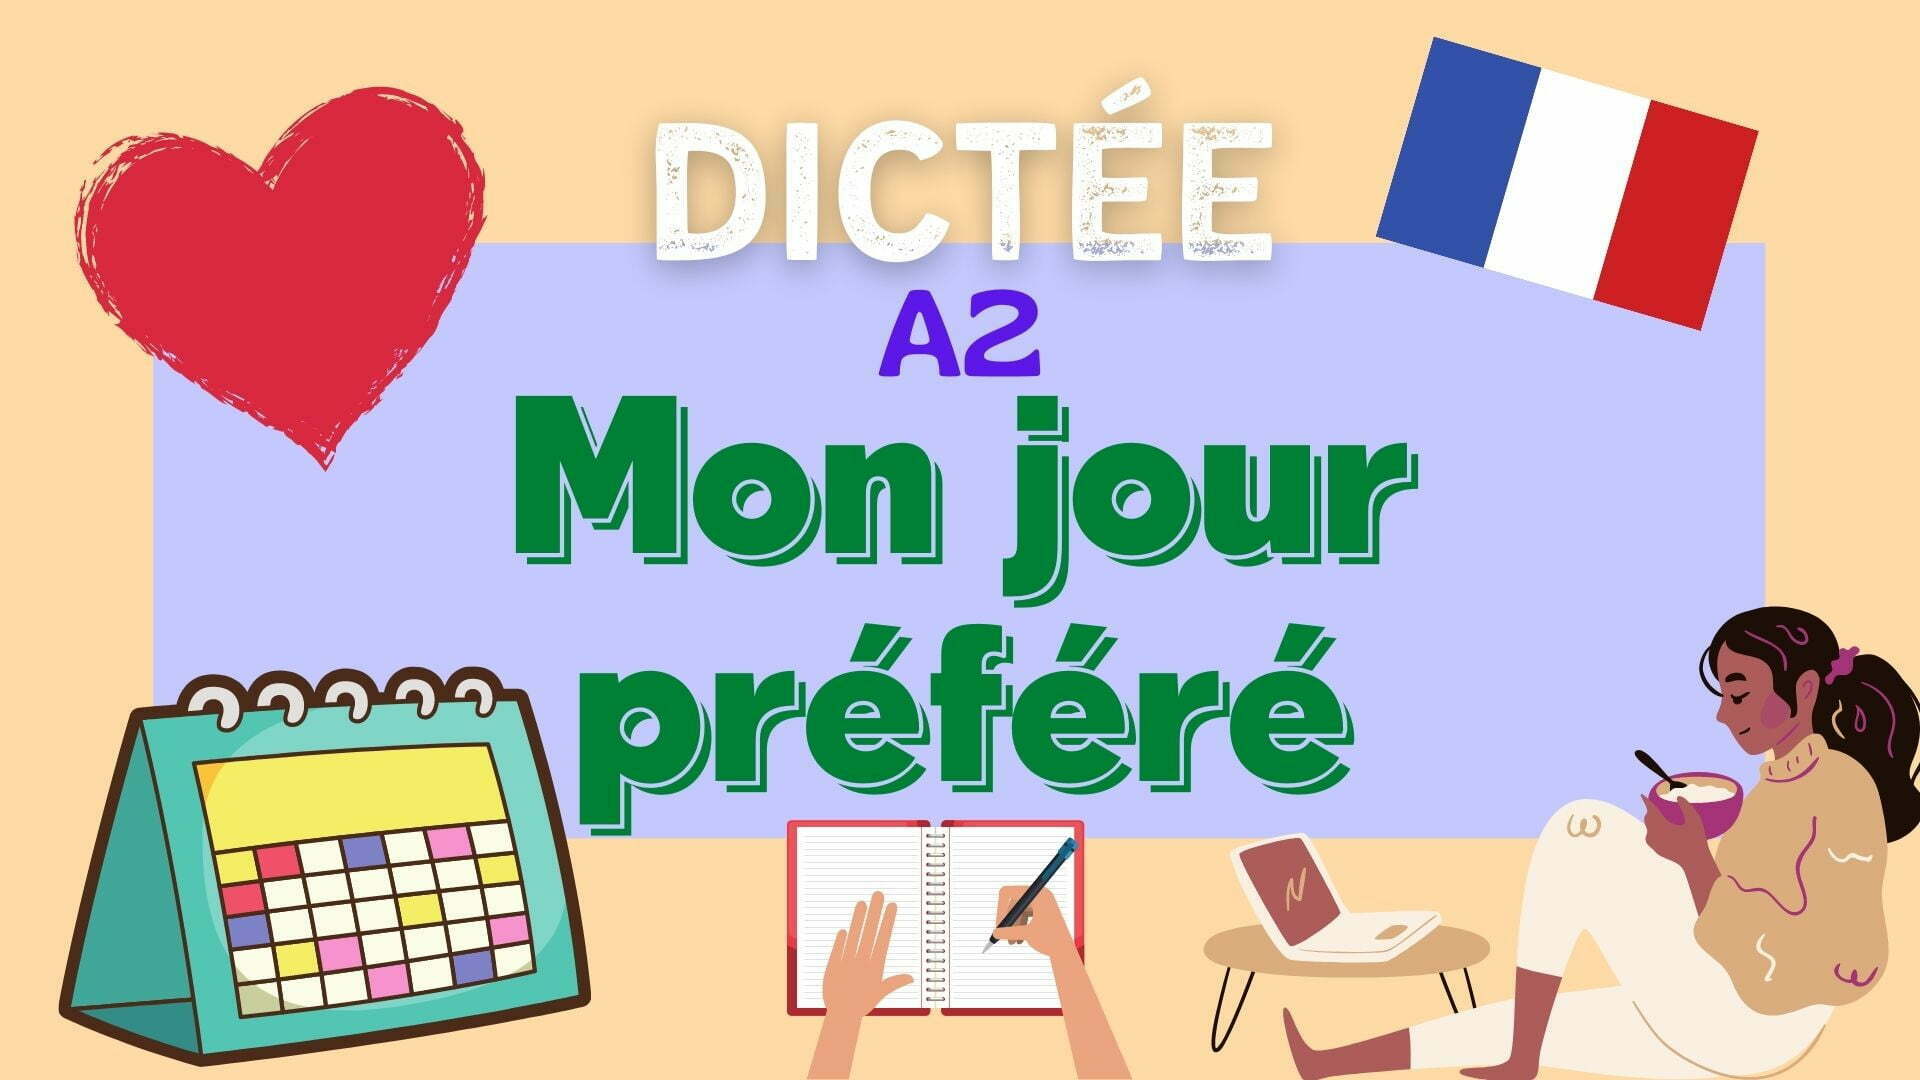 Mon jour préféré - French dictation exercise - dictée en français